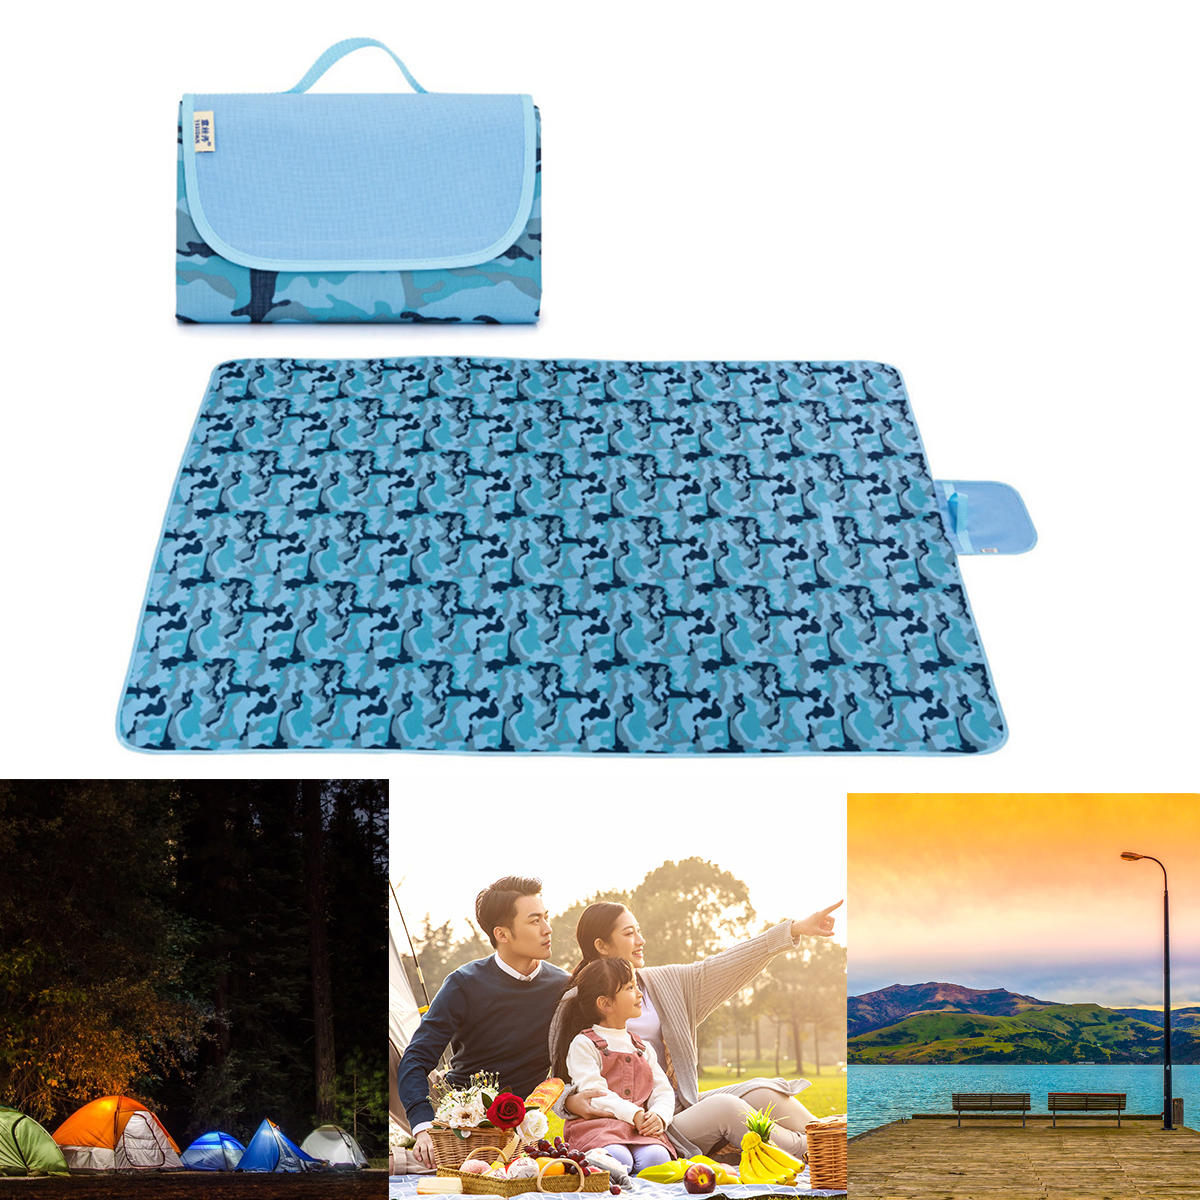 Складной пикник-коврик 145/195x200 см, водонепроницаемый, влагозащитный, для пляжа, кемпинга и путешествий.